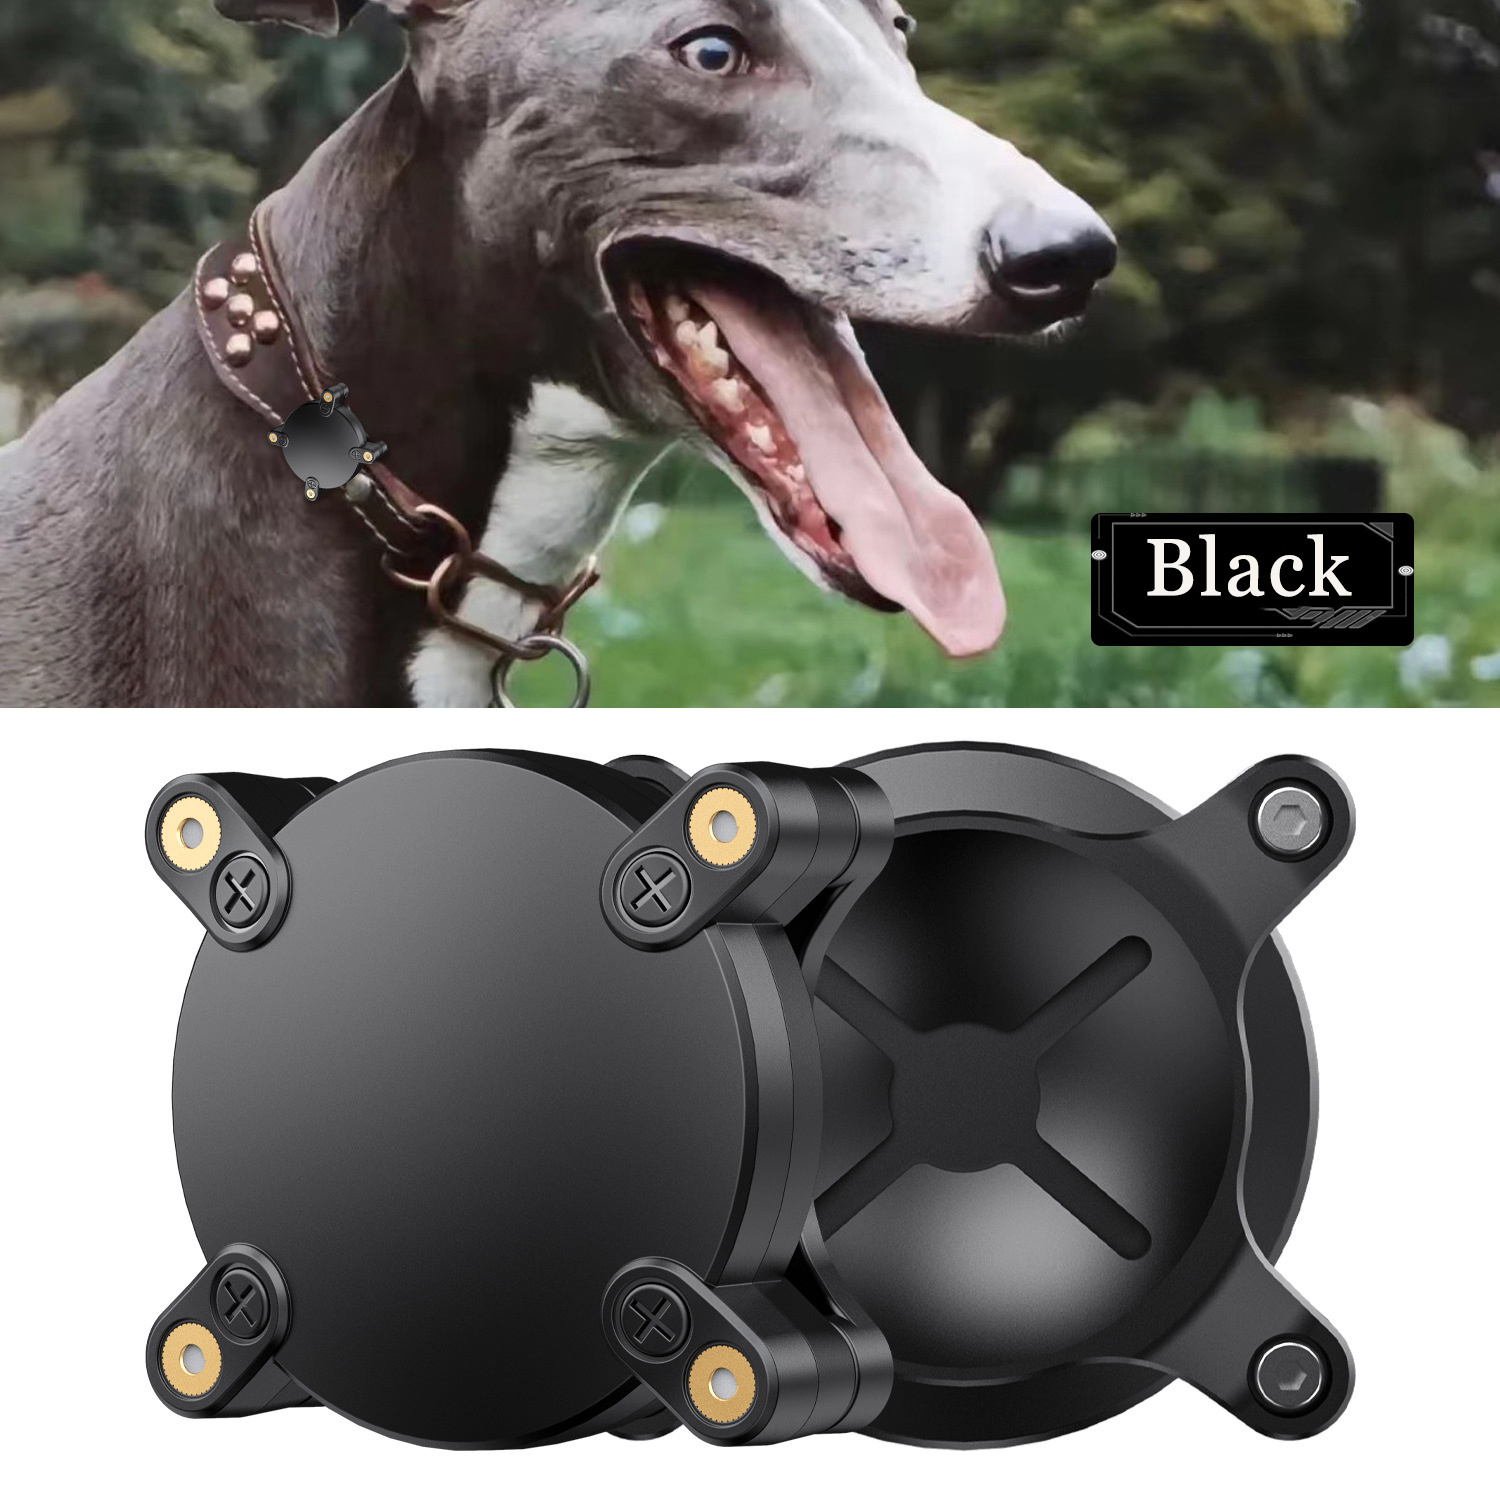  Soporte para collar de perro reflectante compatible